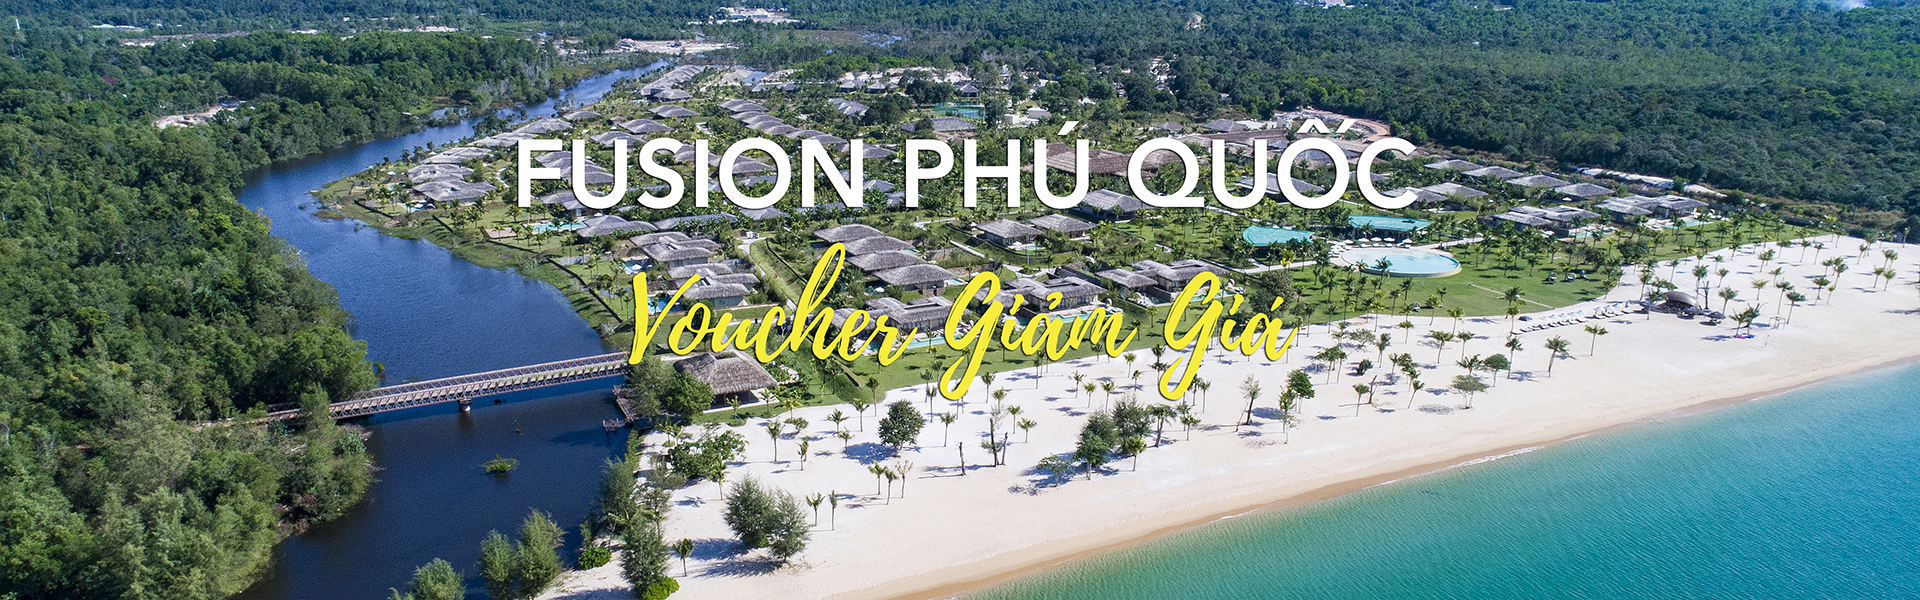 Fusion Resort Phu Quoc Medium